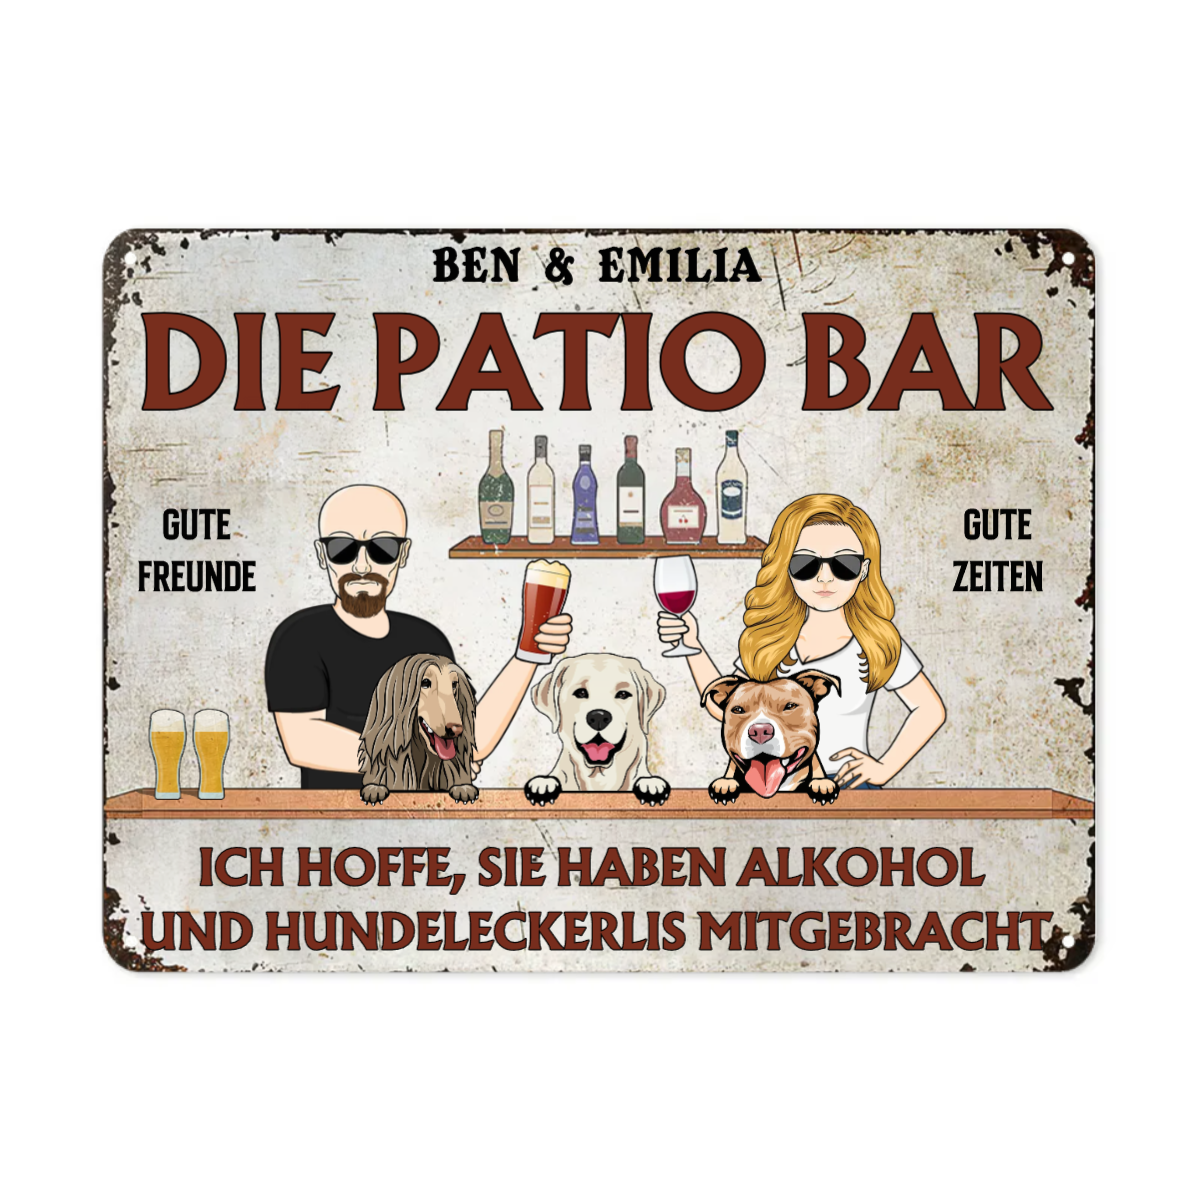 Ich hoffe, du hast Alkohol und Hundekekse mitgebracht - Hinterhof Zeichen - Personalisierte Benutzerdefinierte Klassische Metallschilder